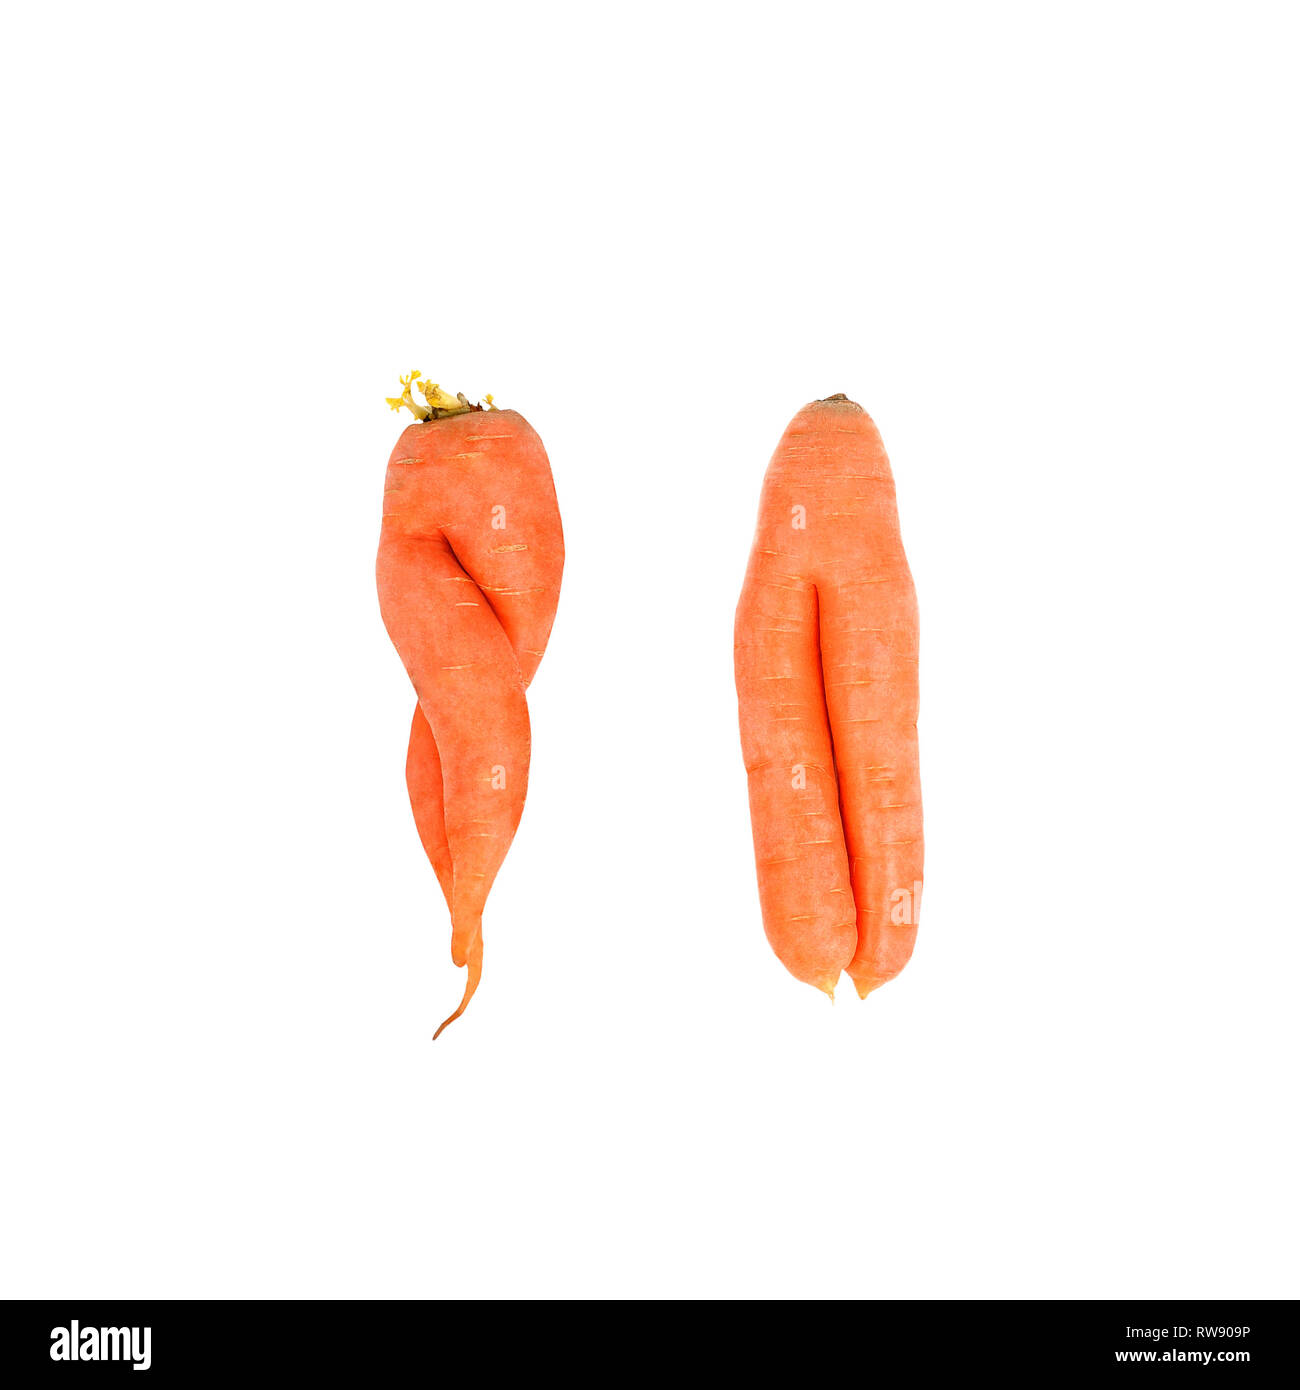 Les carottes cultivées accueil bio laid isolé sur fond blanc.deux carottes tordu dans chacun des autres aliments. laid. Banque D'Images